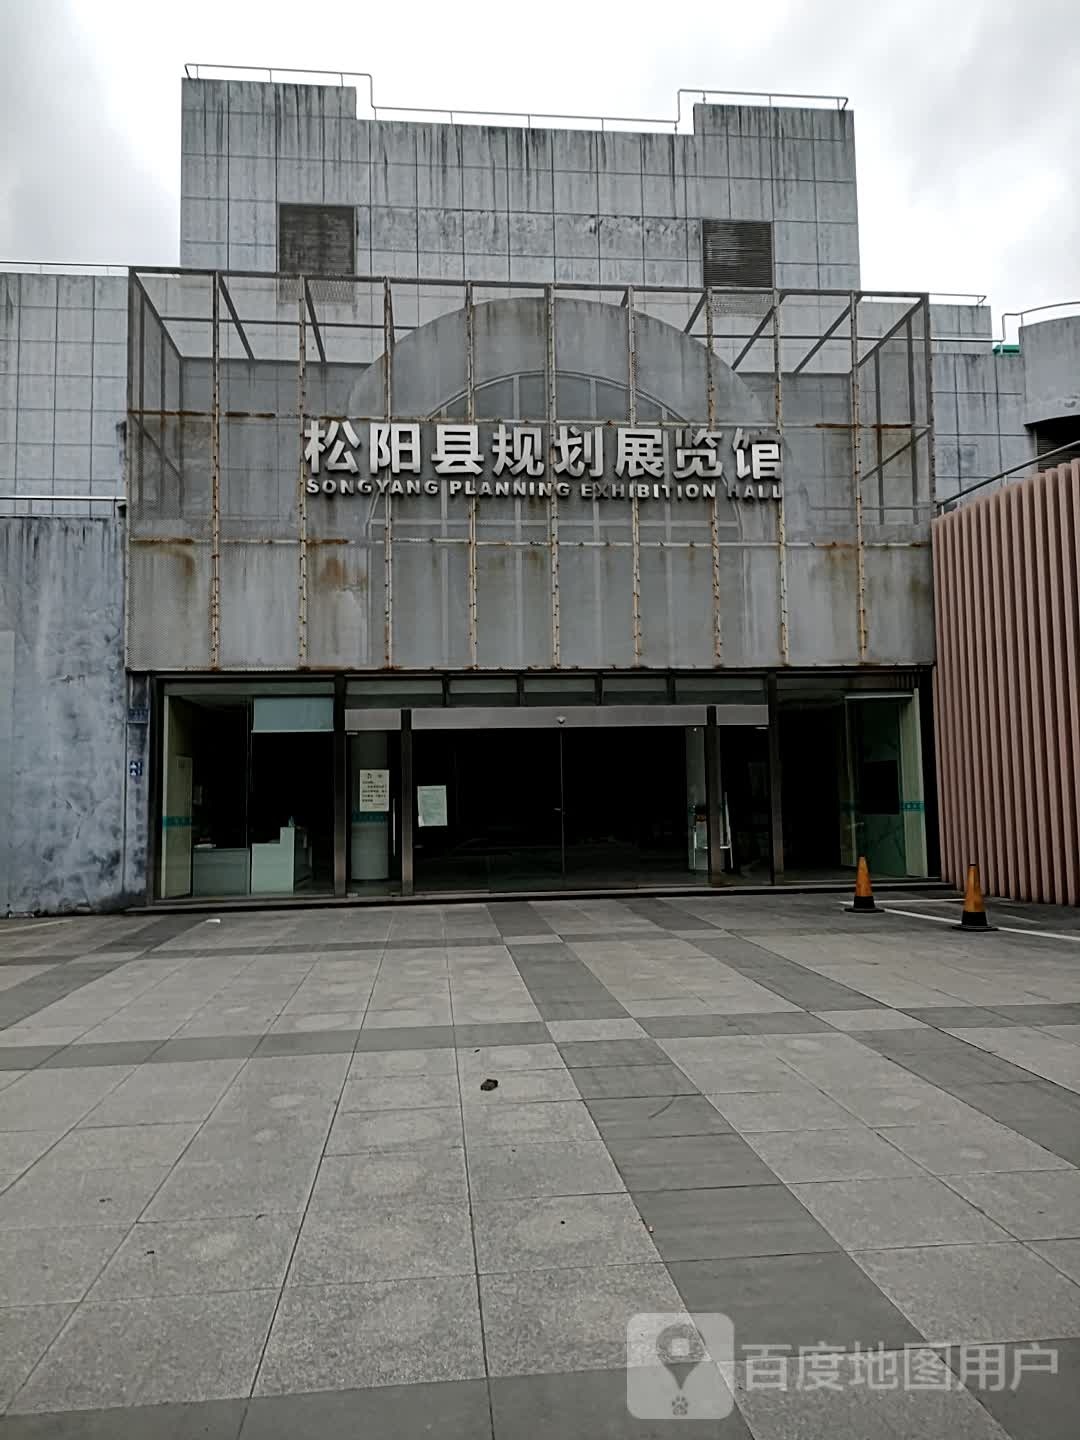 松阳县规划展览馆